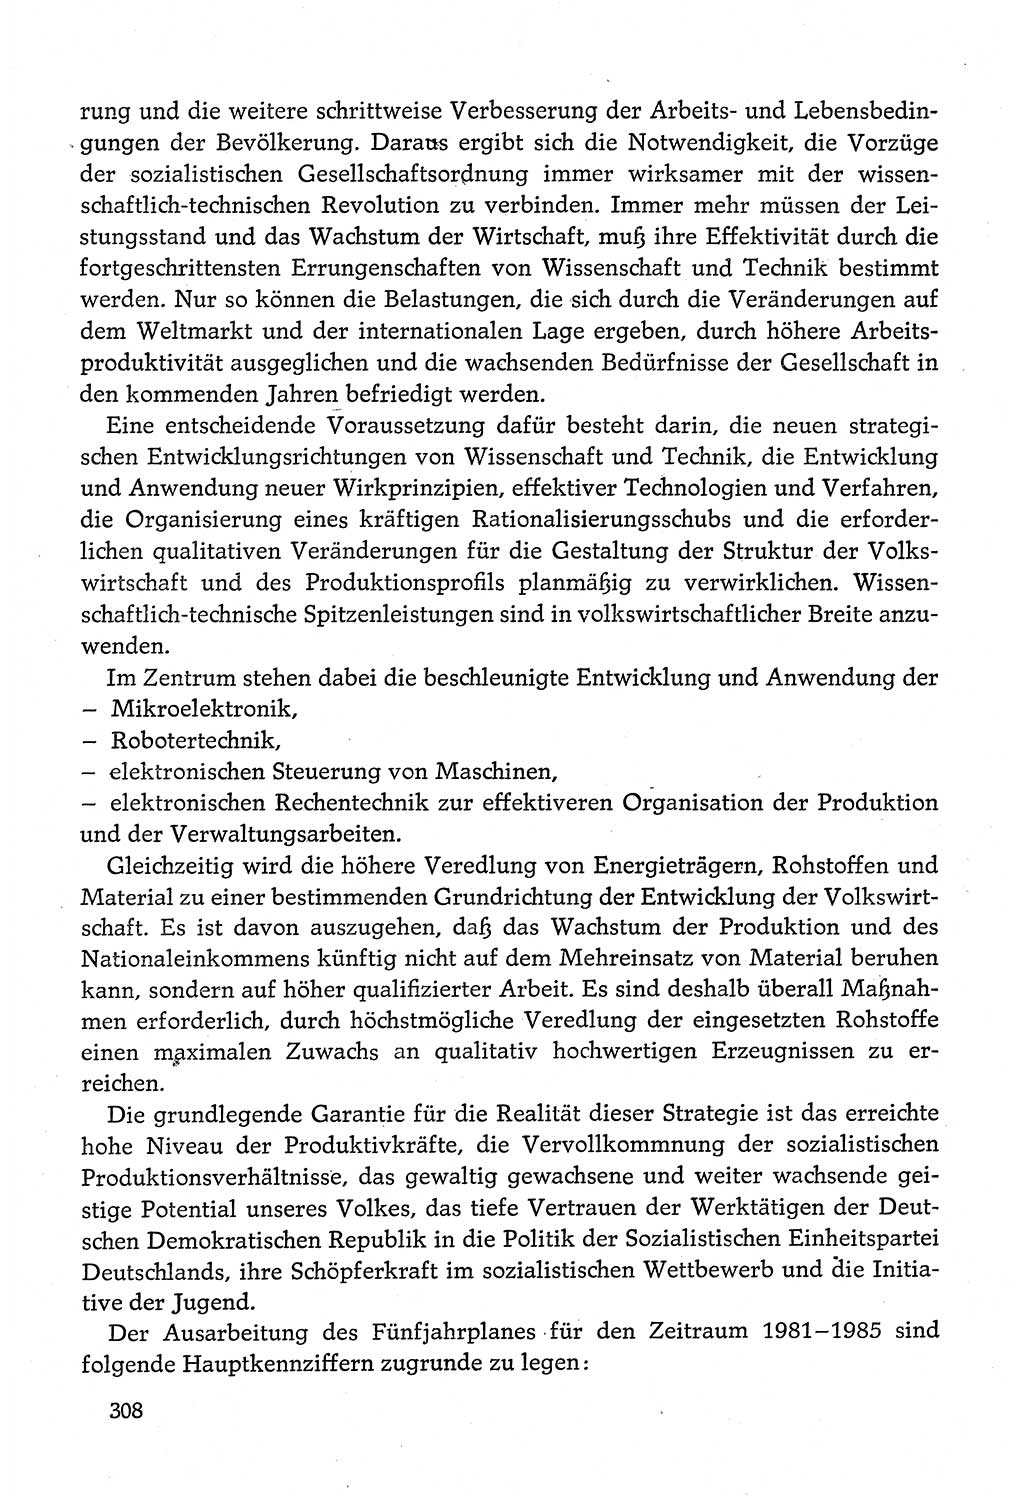 Dokumente der Sozialistischen Einheitspartei Deutschlands (SED) [Deutsche Demokratische Republik (DDR)] 1980-1981, Seite 308 (Dok. SED DDR 1980-1981, S. 308)